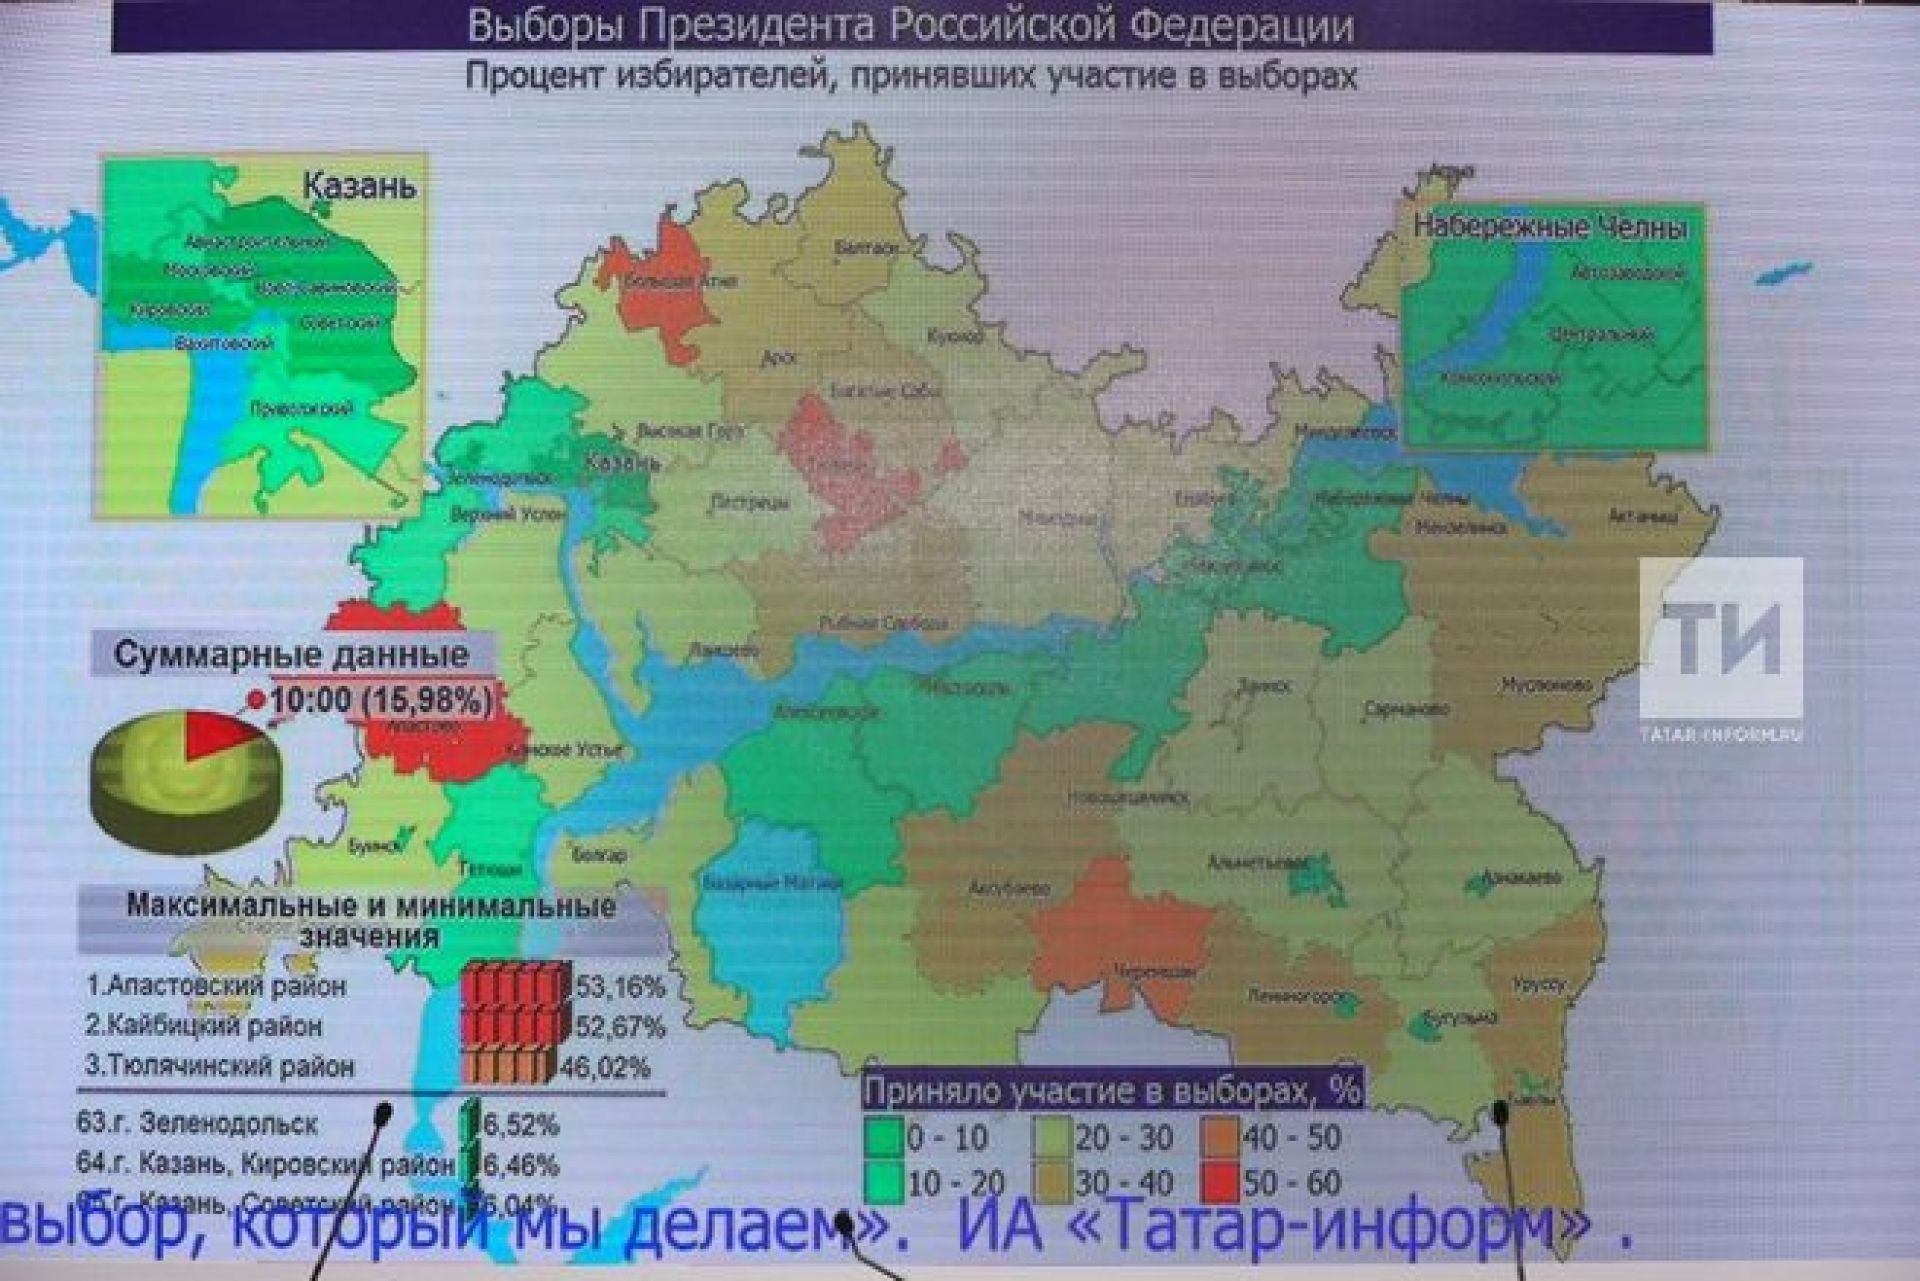 Где проголосовать в казани. Процент проголосовавших по регионам. Карта голосования в России. Выборы в Татарстане больше 100 процентов.